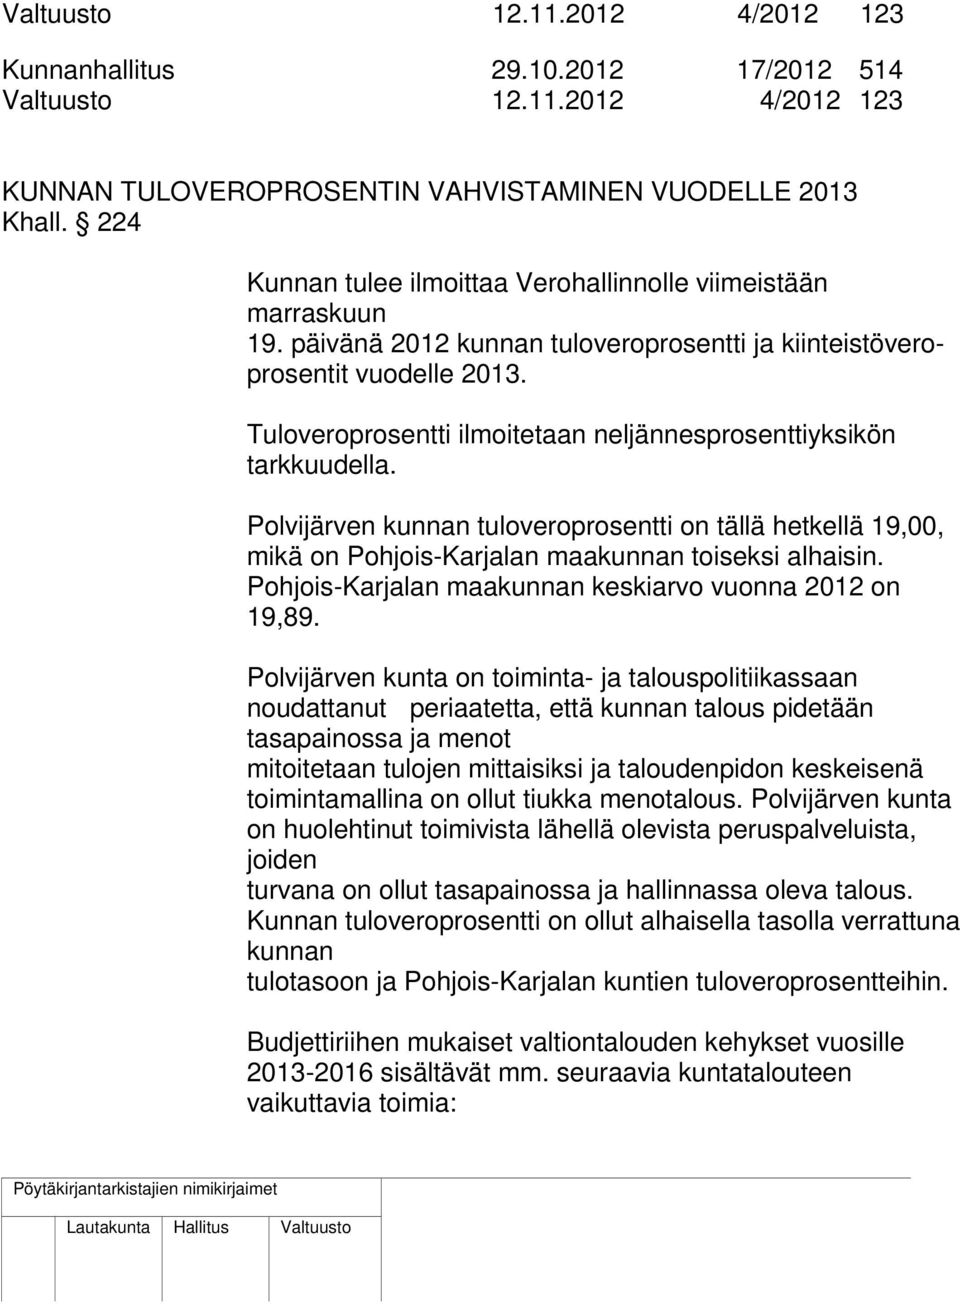 Tuloveroprosentti ilmoitetaan neljännesprosenttiyksikön tarkkuudella. Polvijärven kunnan tuloveroprosentti on tällä hetkellä 19,00, mikä on Pohjois-Karjalan maakunnan toiseksi alhaisin.